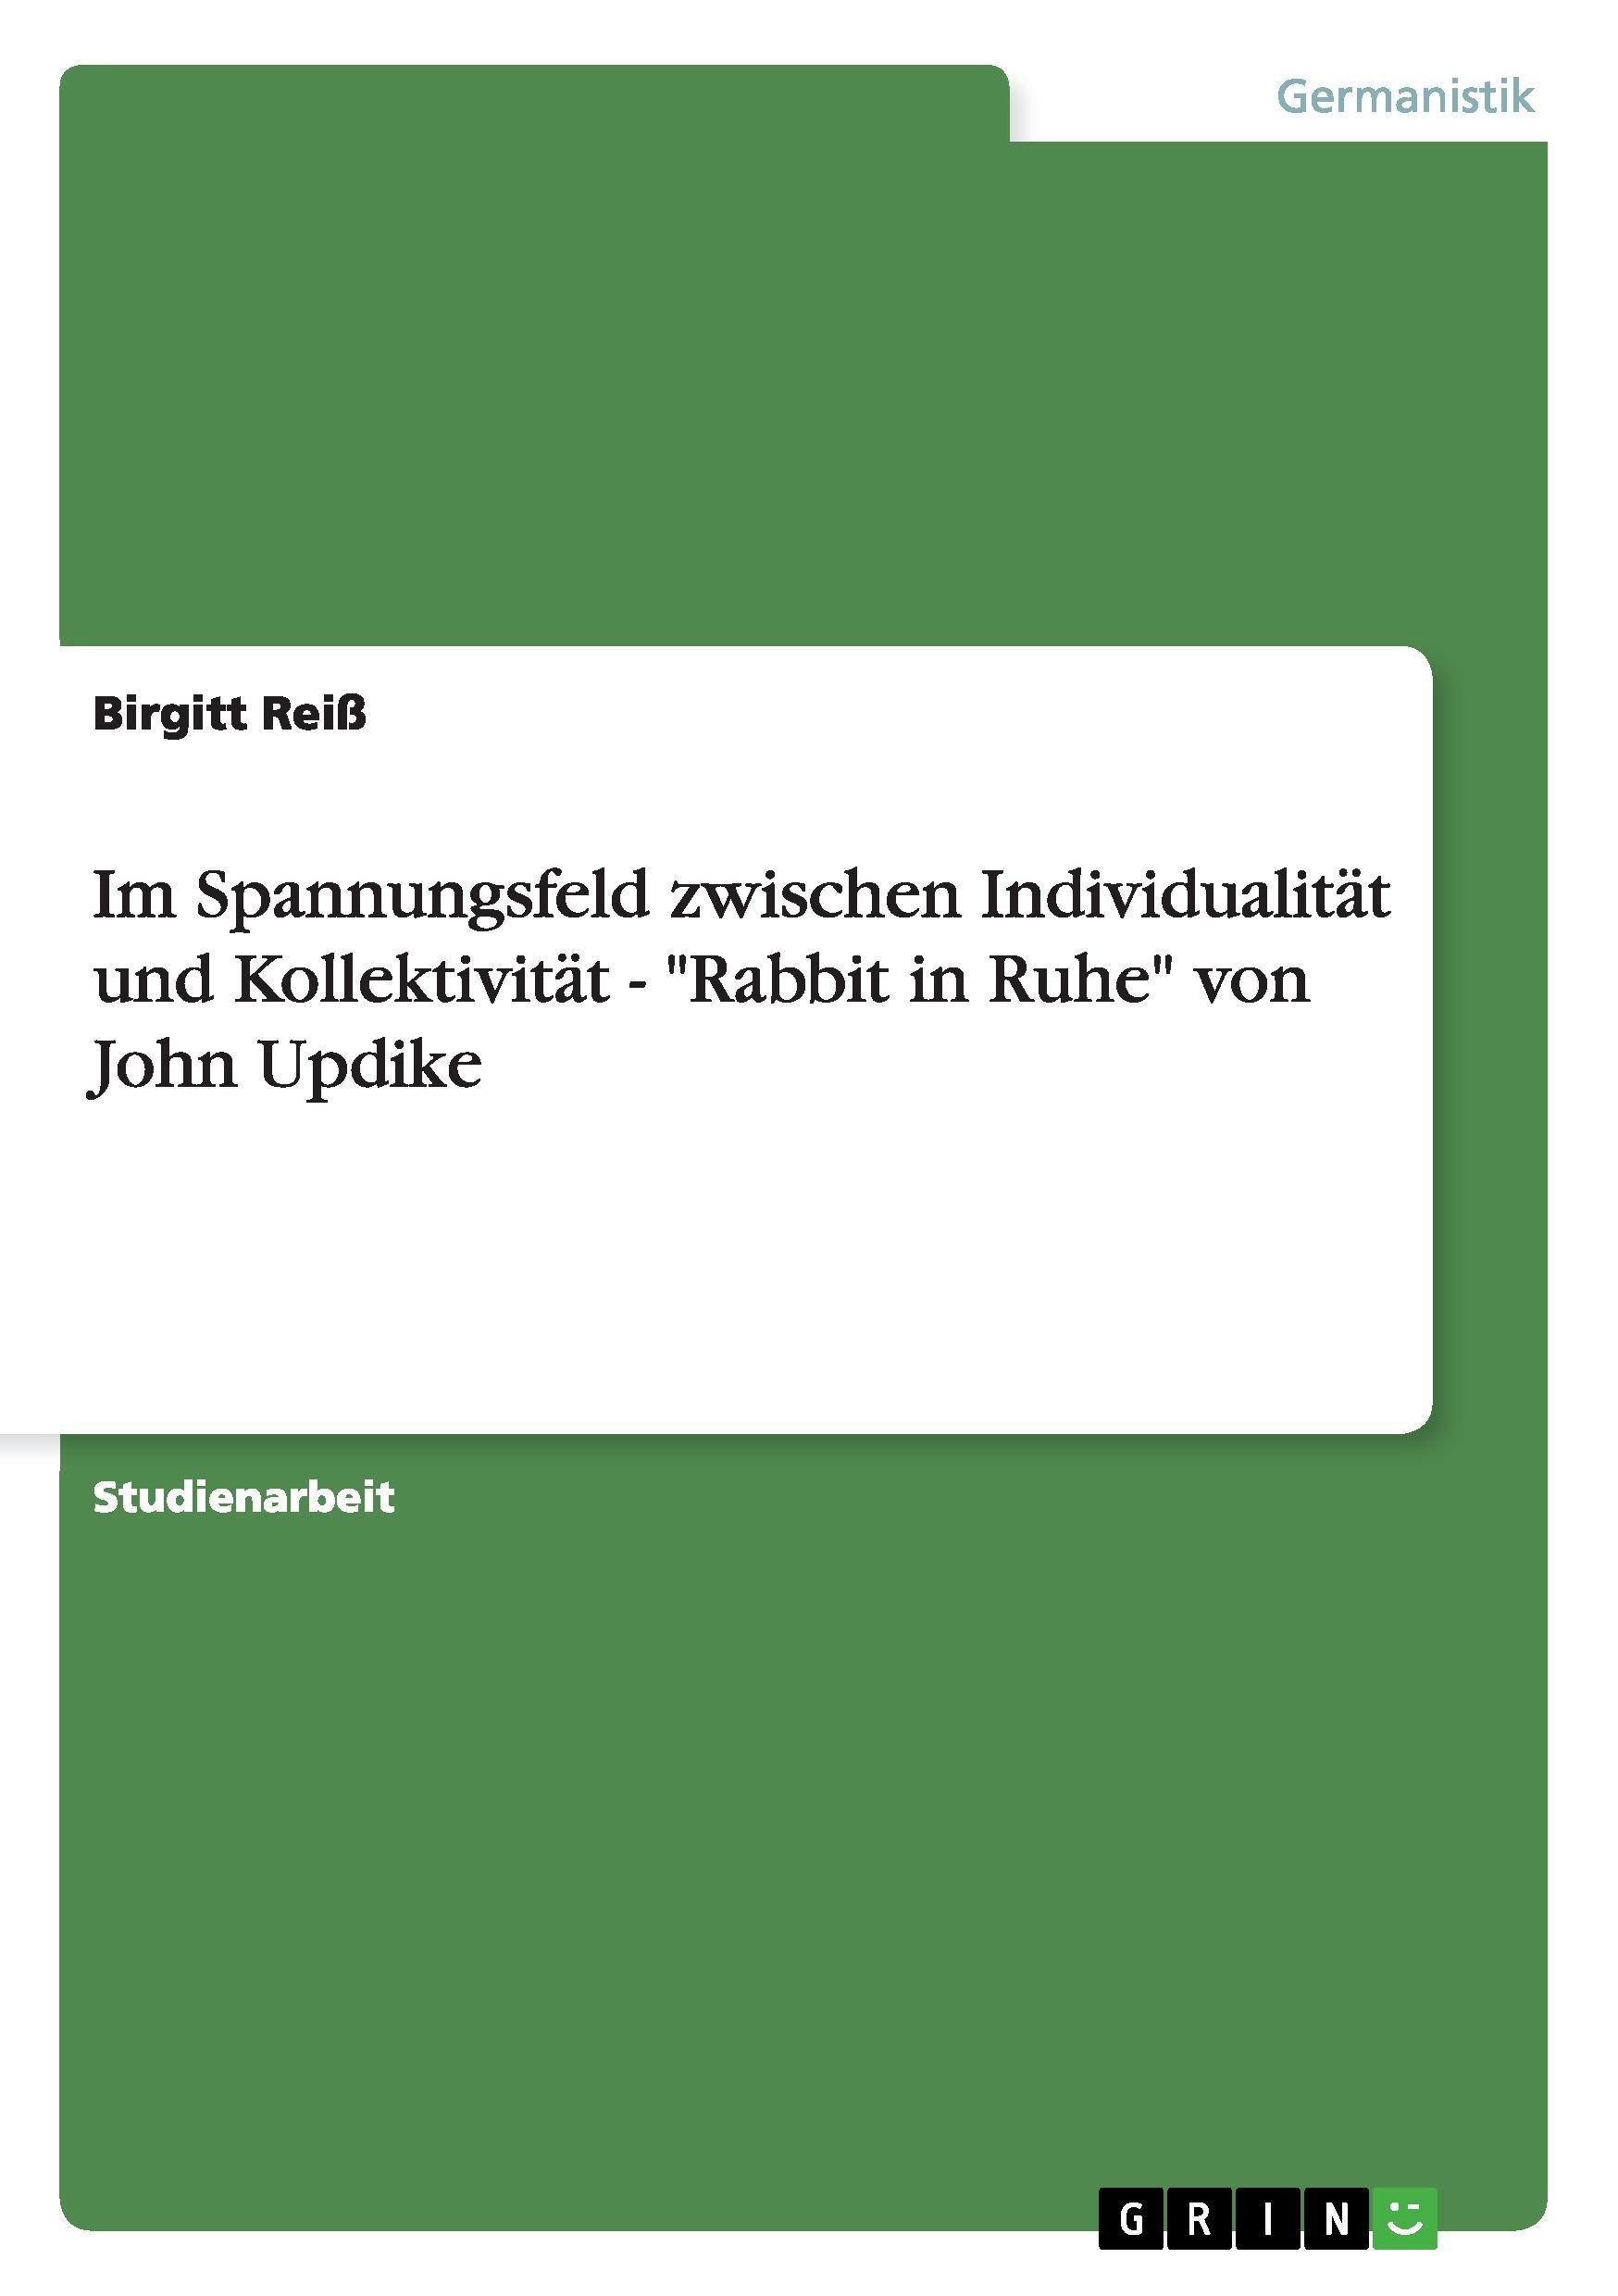 Im Spannungsfeld zwischen Individualitaet und Kollektivitaet -  Rabbit in Ruhe  von John Updike - Reiss, Birgitt